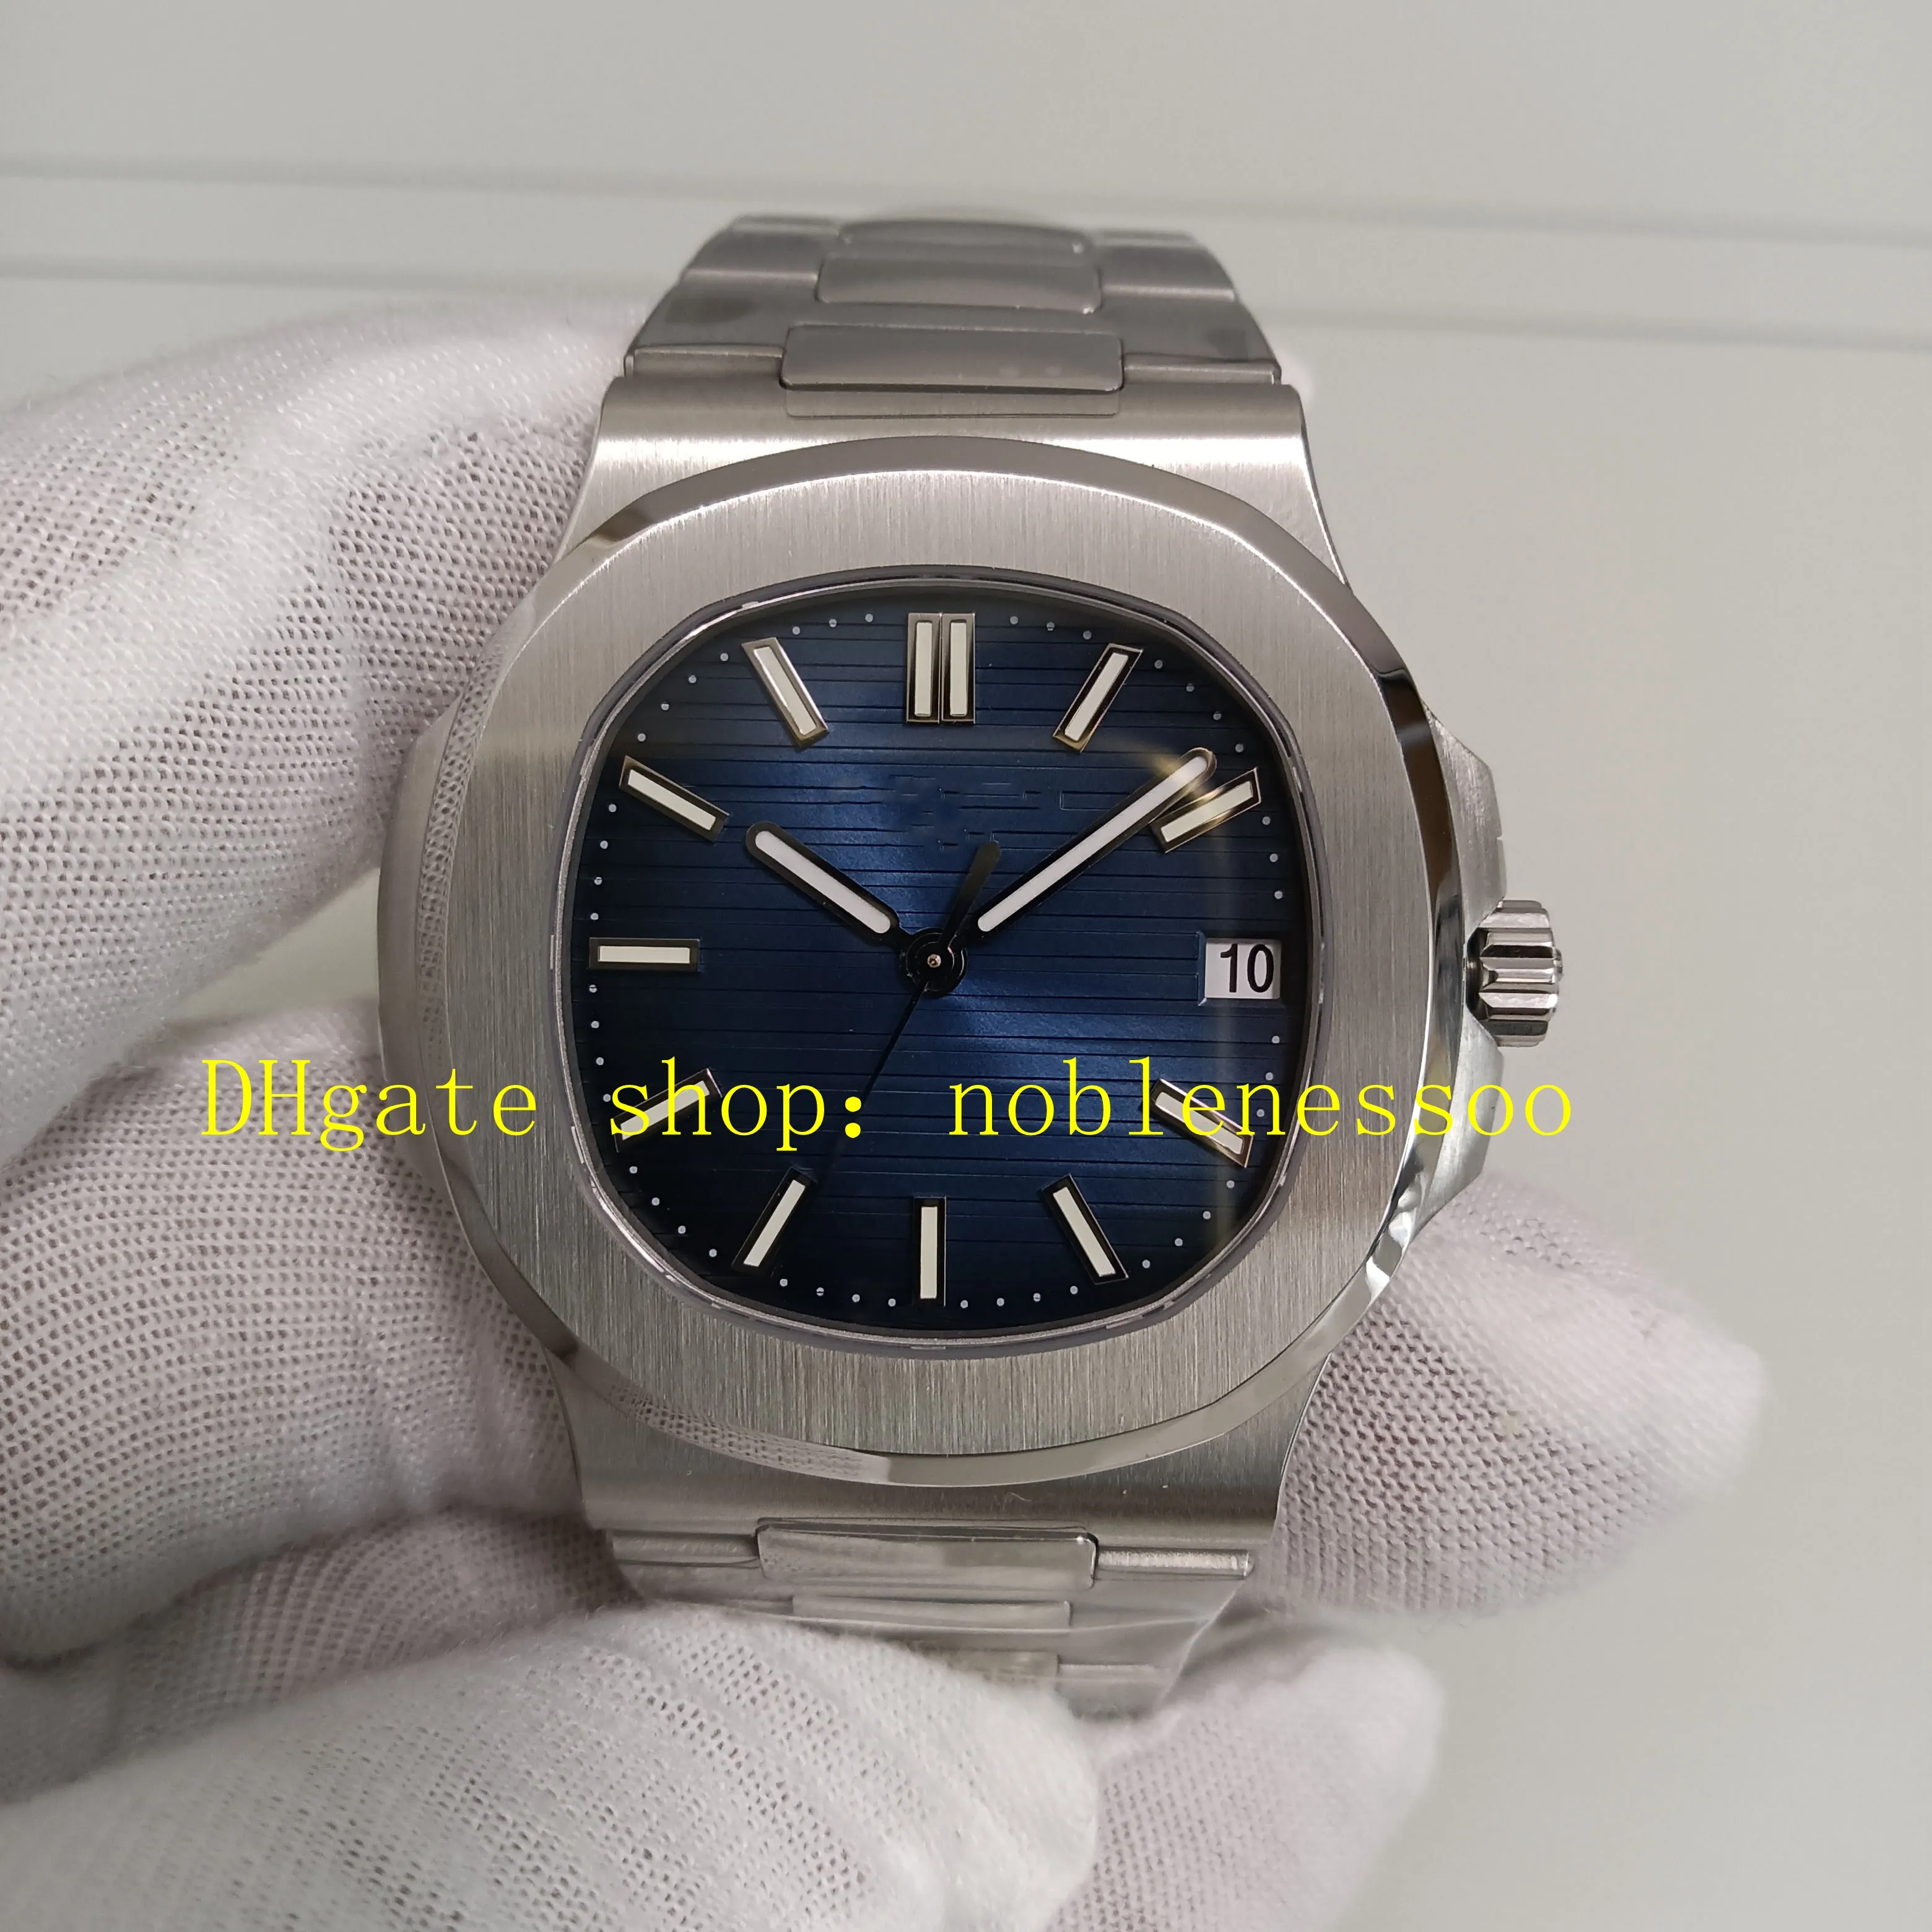 2 Stil Superautomatische Uhren Authentisches Bild 40 mm Herrenblau Lünette 904L Stahlarmband GR Factory Cal.26-330 S C GRF 5711 Mechanische Kleider Uhren Armbanduhr